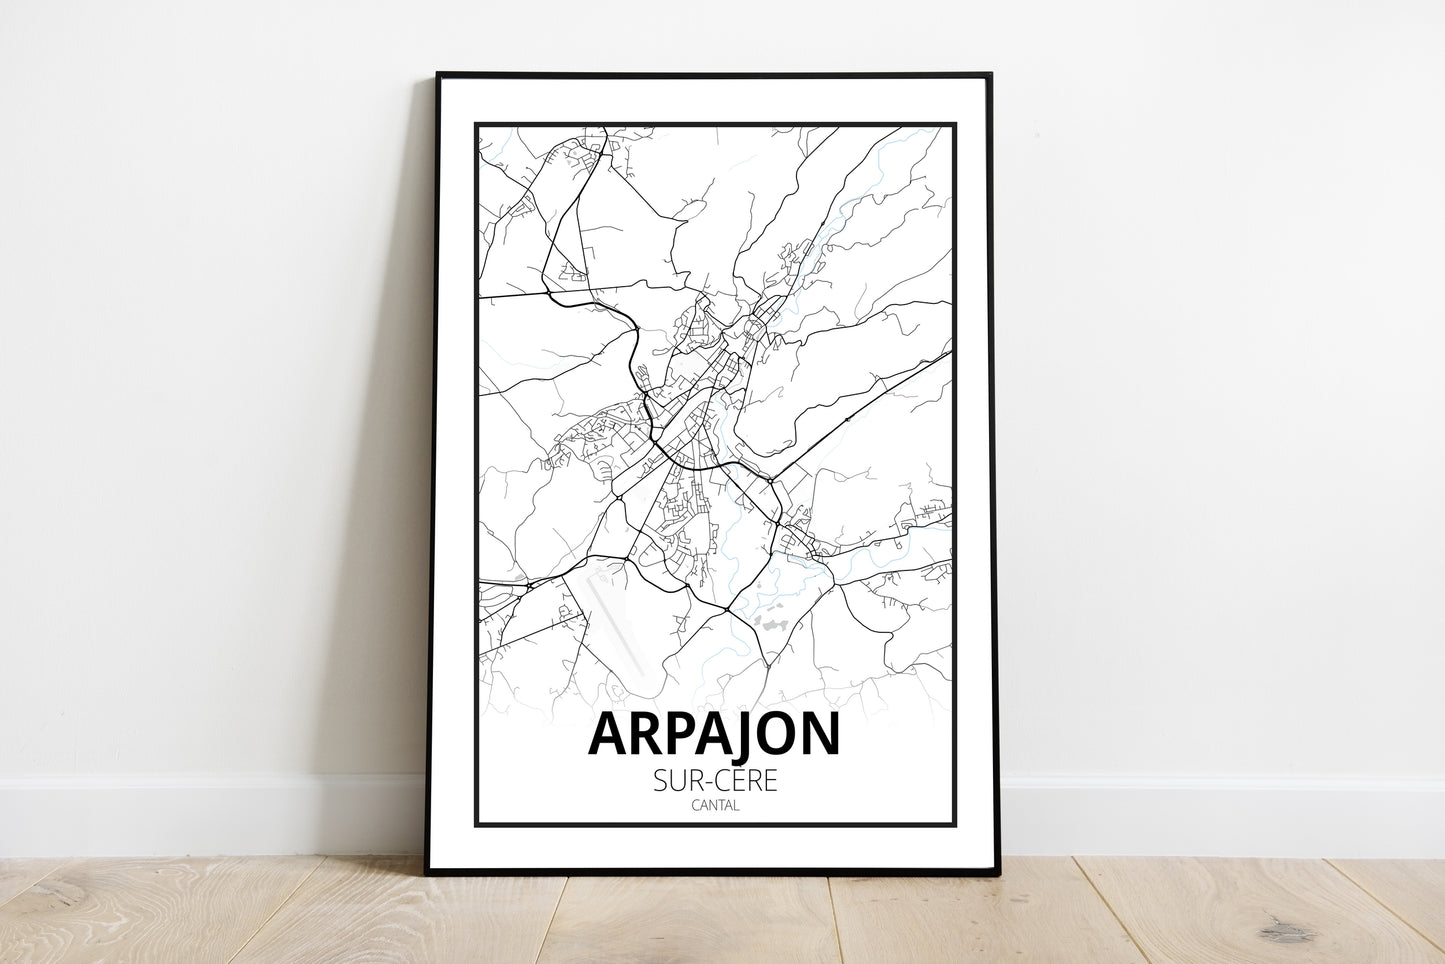 Arpajon-sur-Cère - Cantal